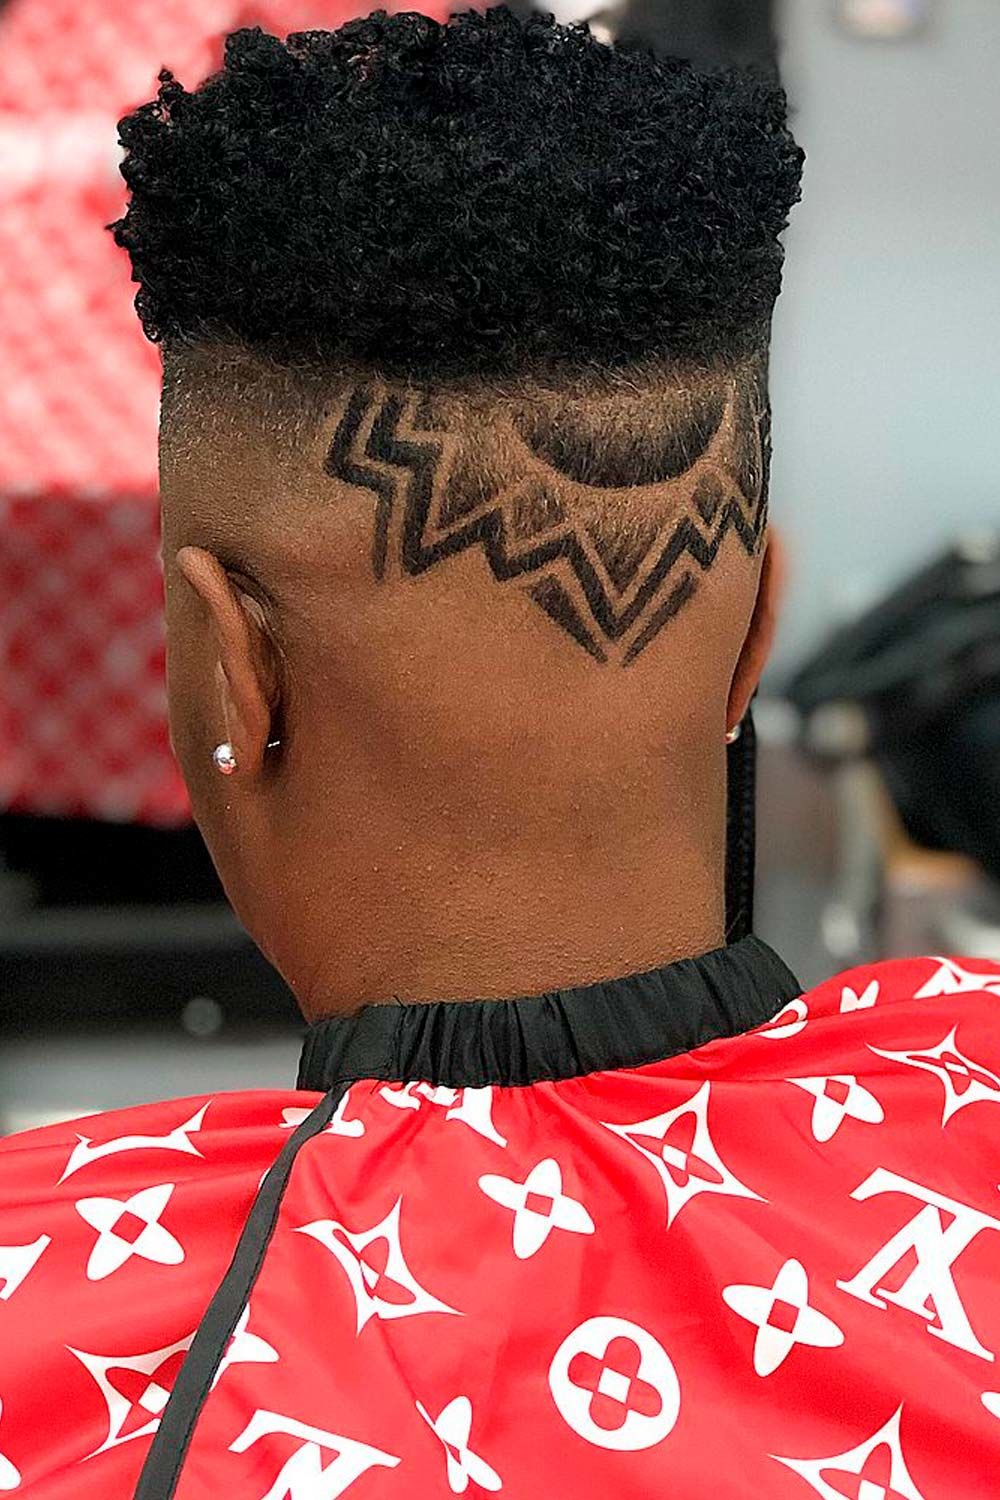 Hair Design For Black Men Haircuts